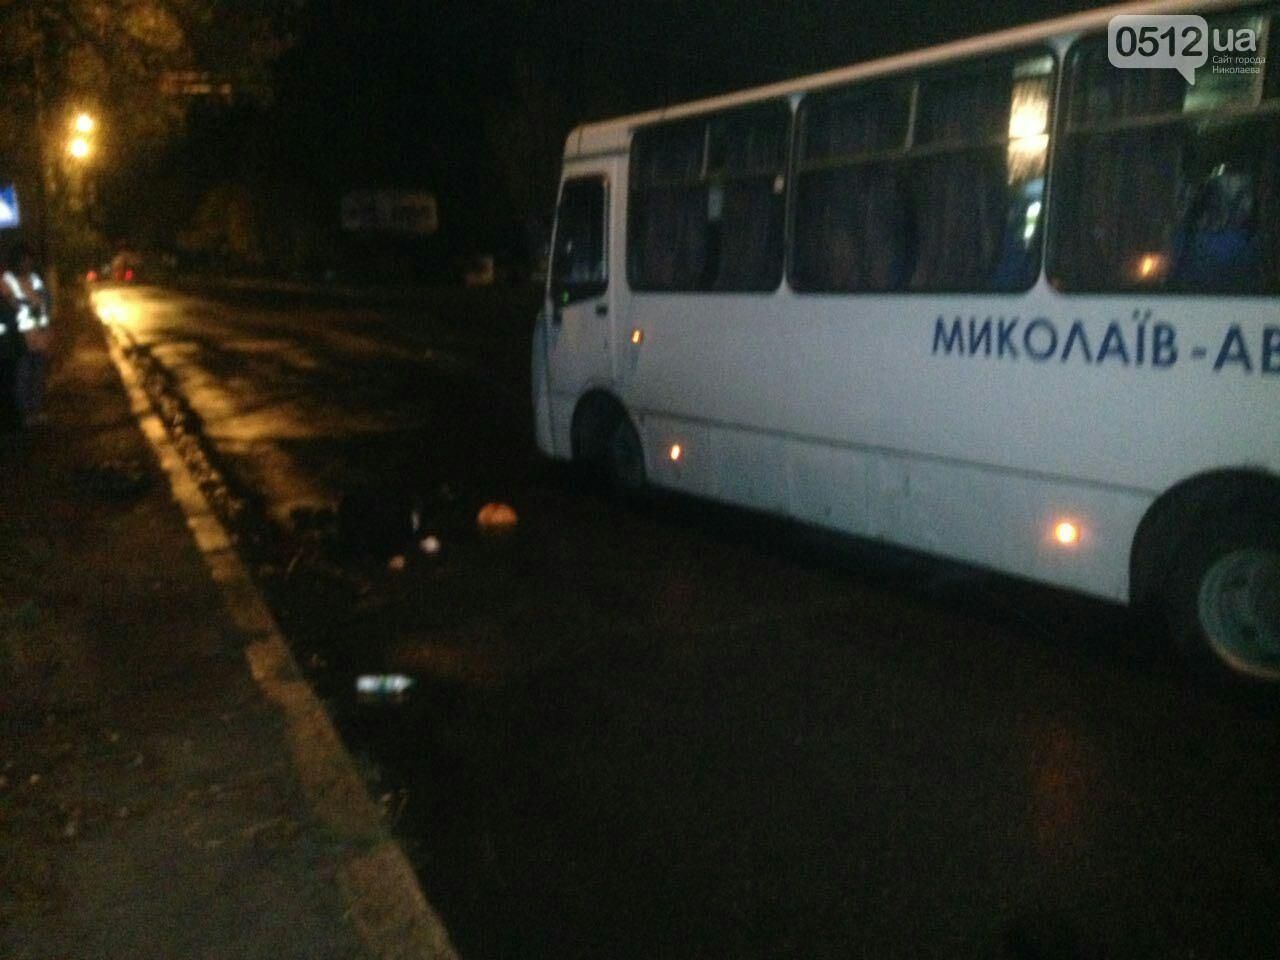 Автобус насмерть збив двох пішоходів у Миколаєві: фото 18+